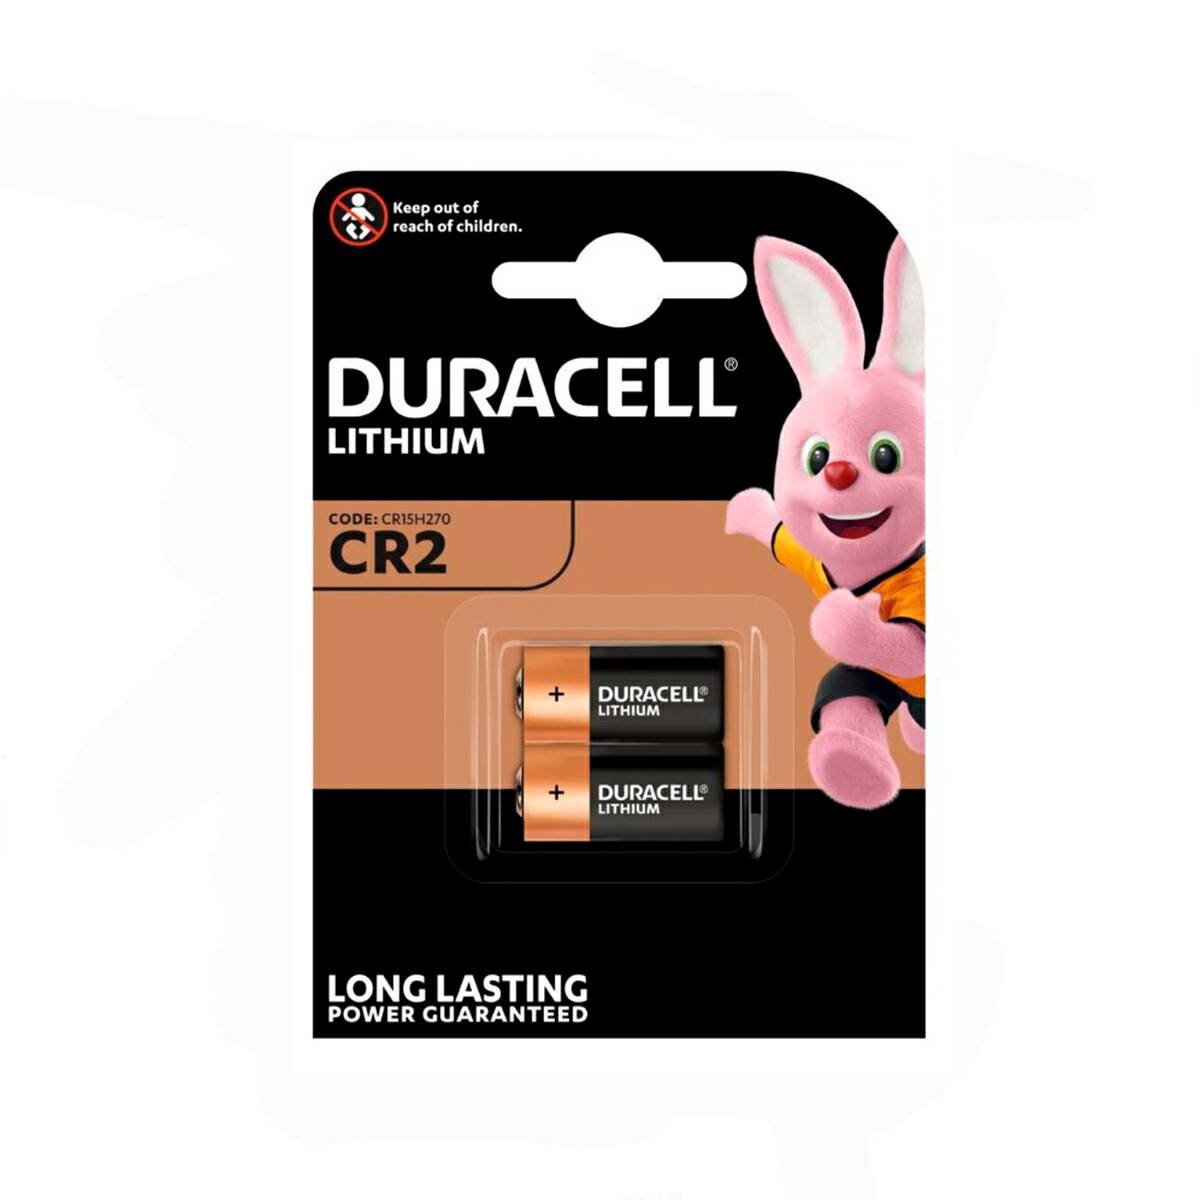 Battery Duracell CR2 CR15H270 3V 2 pcs